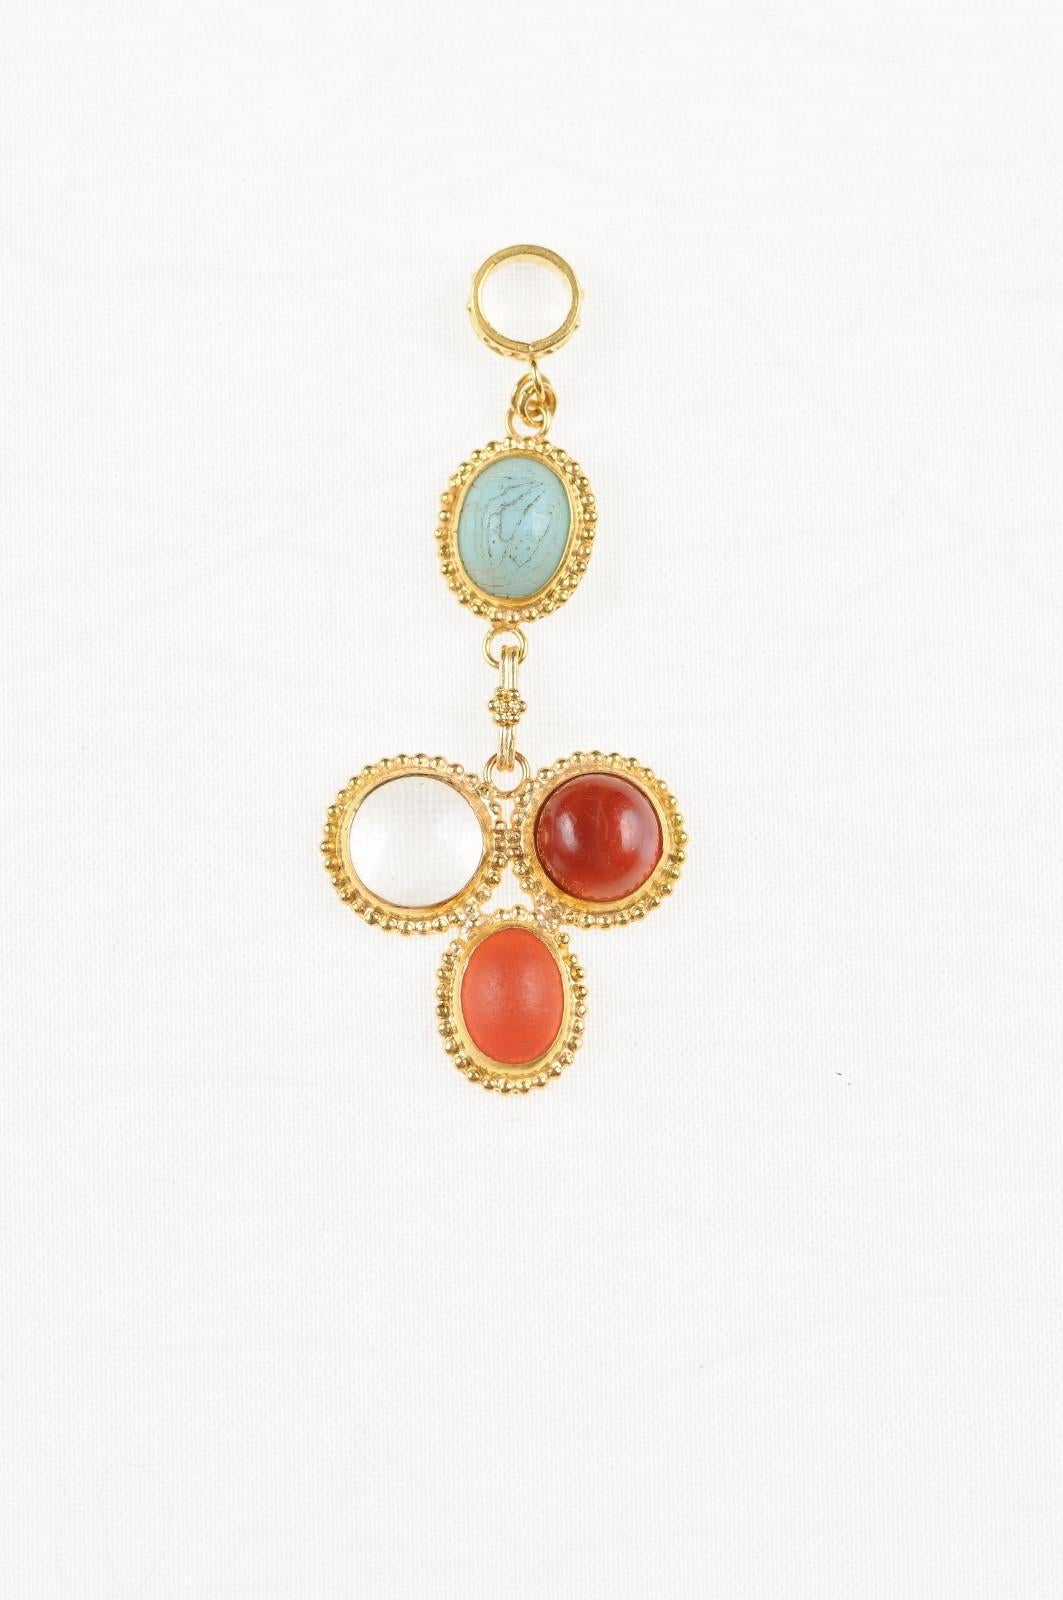 Ravissant pendentif en verre romain (400 à 500 ADS) de couleur variée, serti dans un pendentif en or 21 k personnalisé avec des accents de perles en or et une attache en or 21 k. Le pendentif mesure 1 7/8